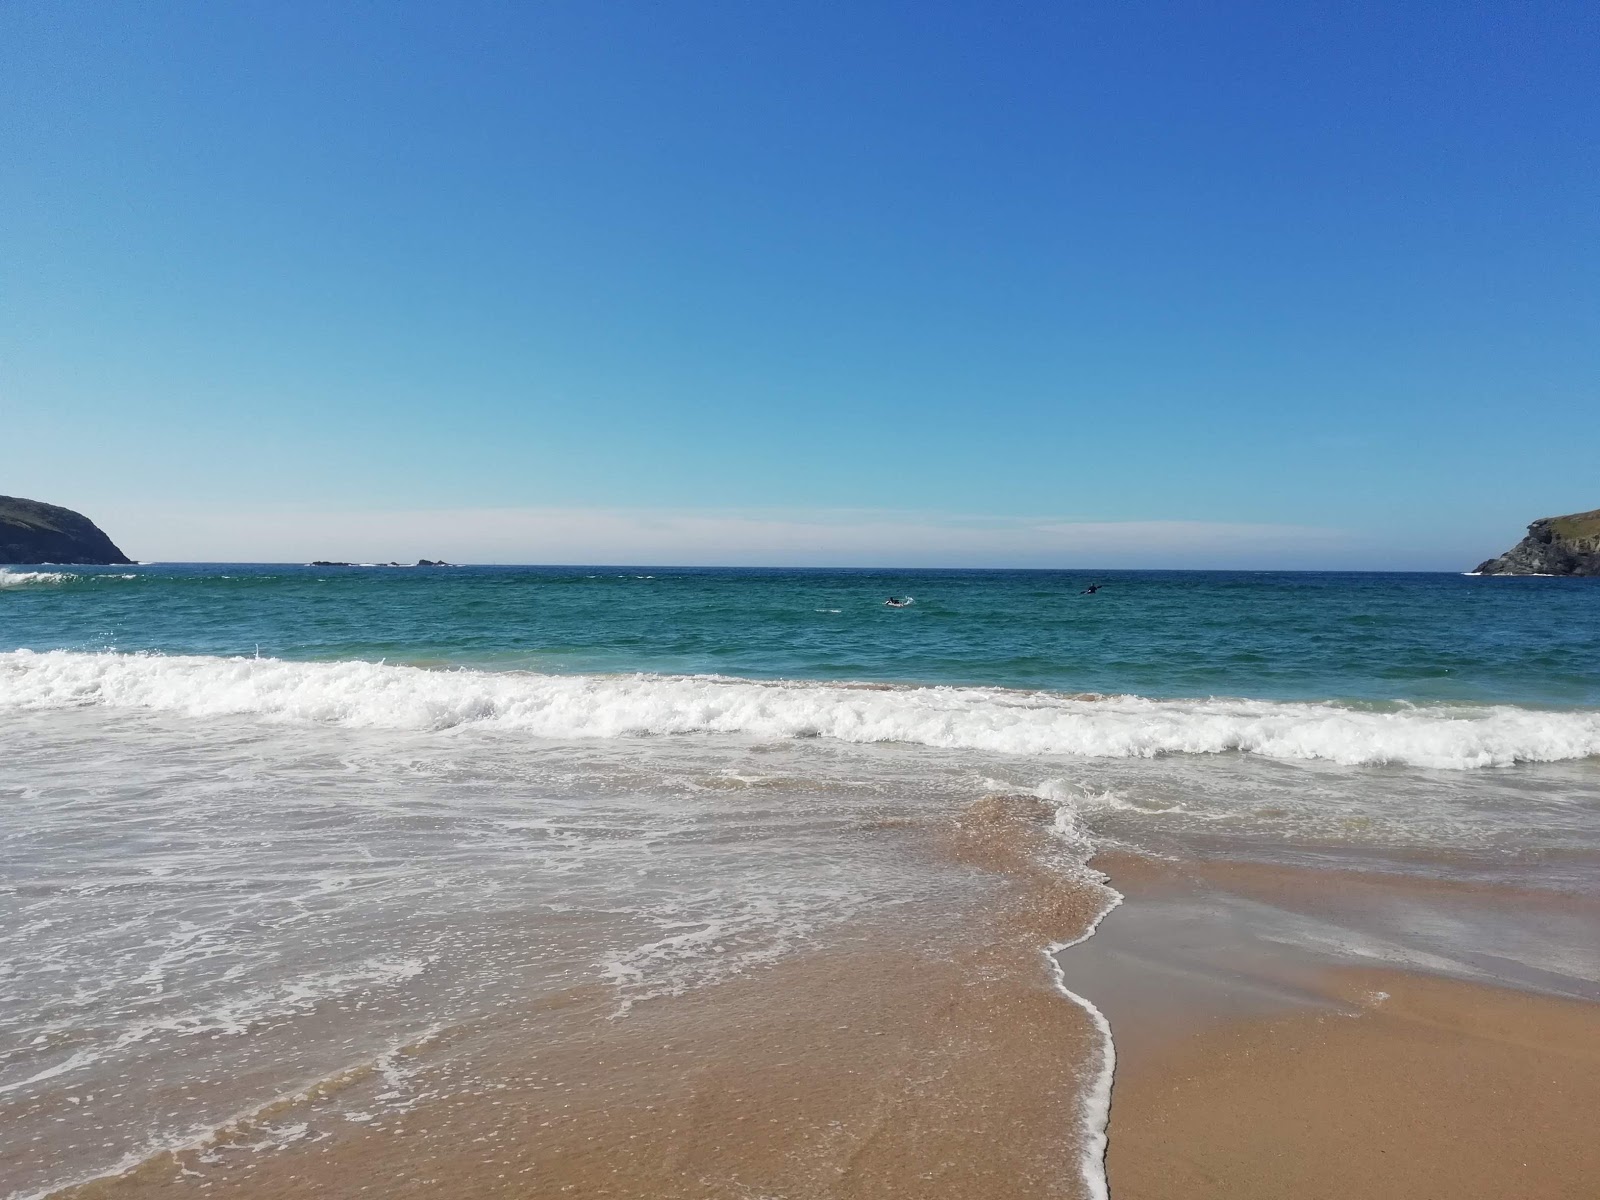 潘坦海滩的照片 - 受到放松专家欢迎的热门地点